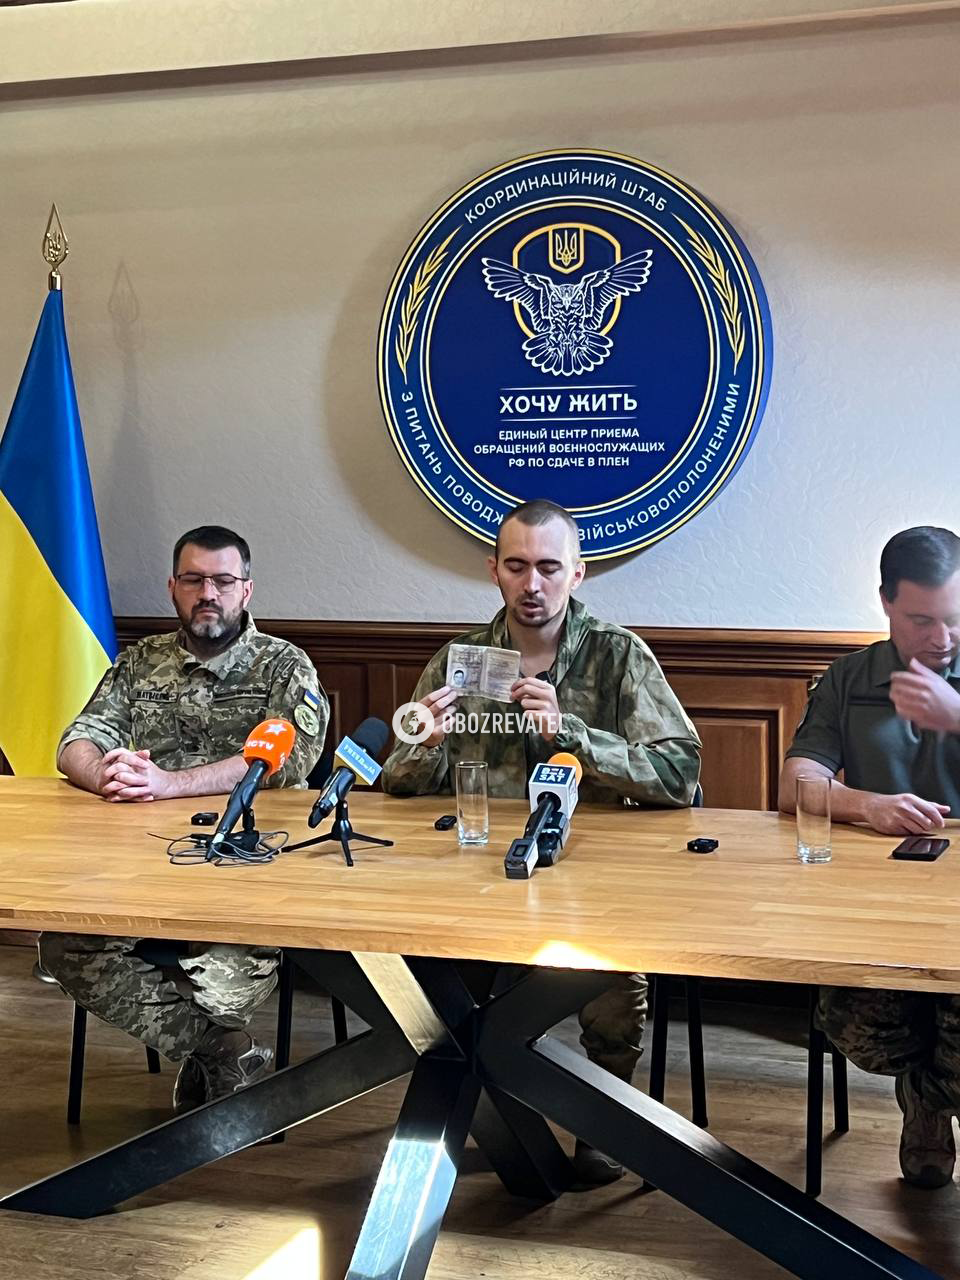 Російський офіцер перейшов на бік України, переманивши ще 11 військових: усі деталі спецоперації "Бариня" від ГУР. Відео